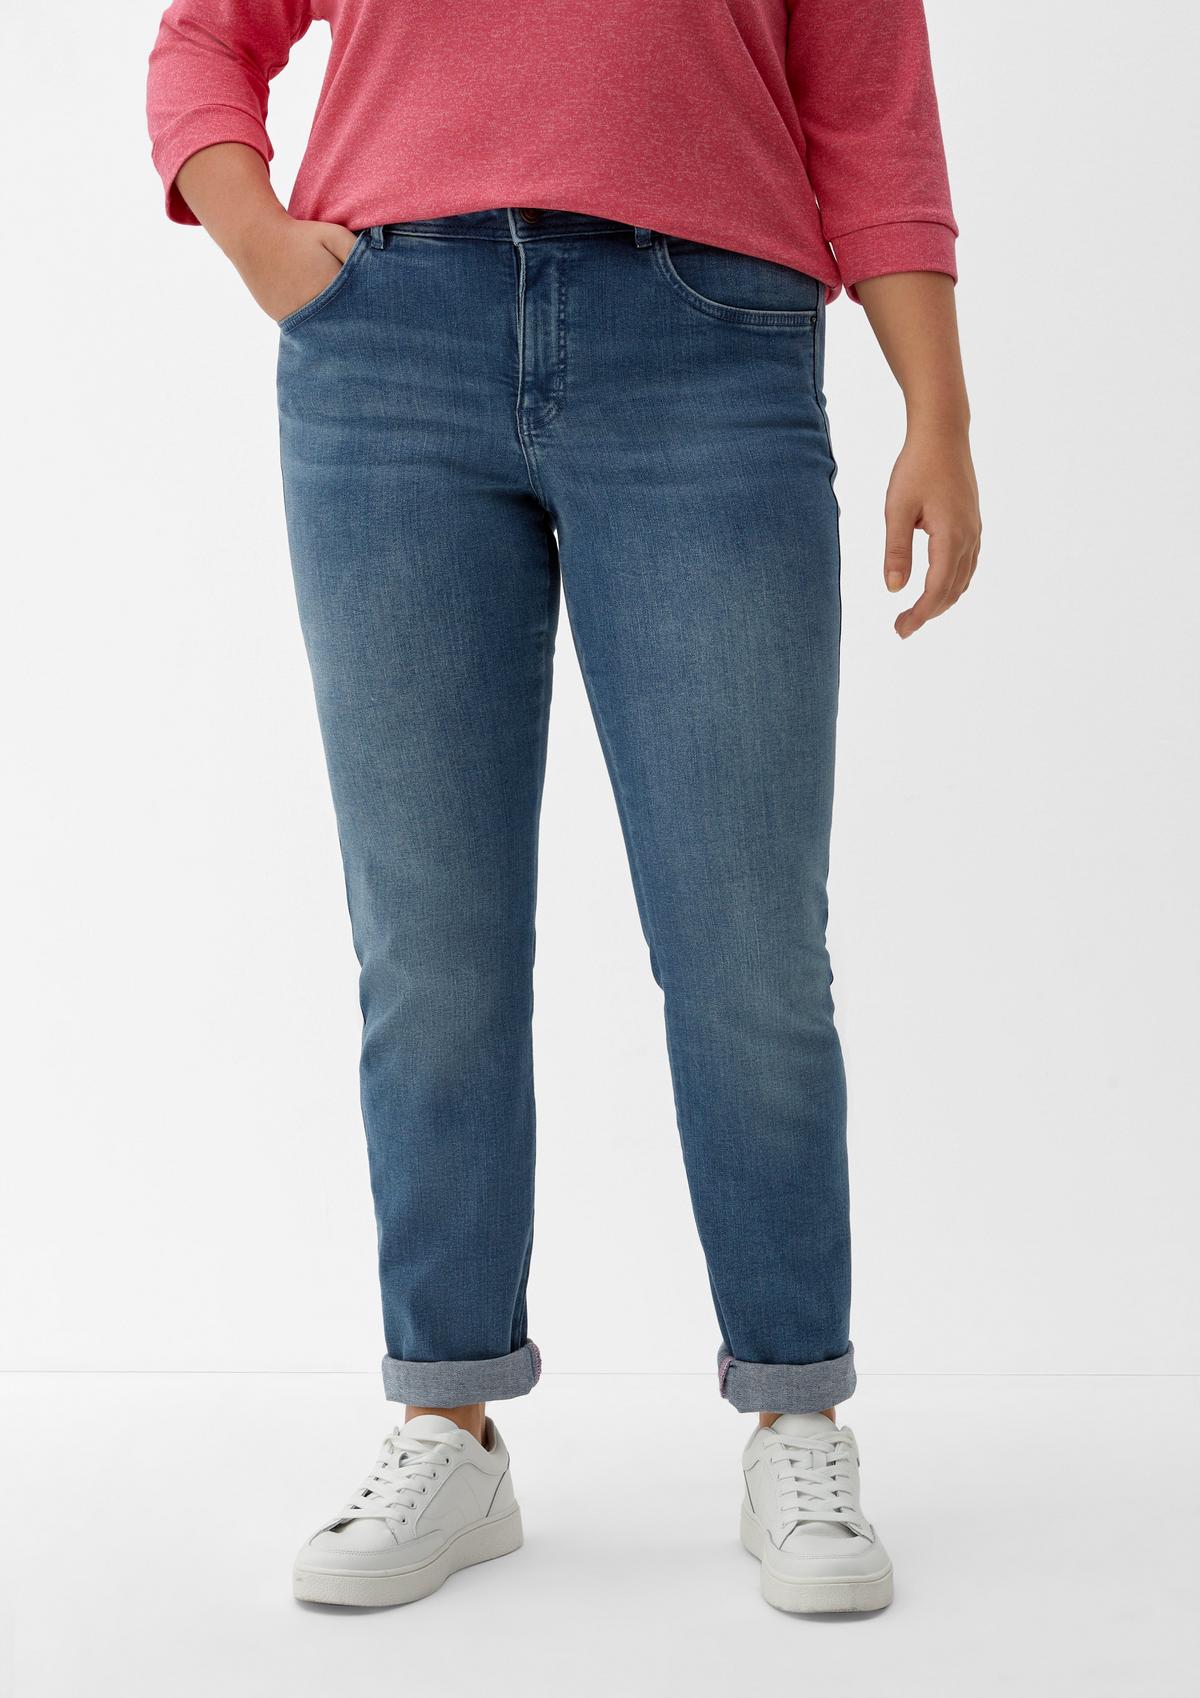 Jeans met contrasterende details aan de zijkant